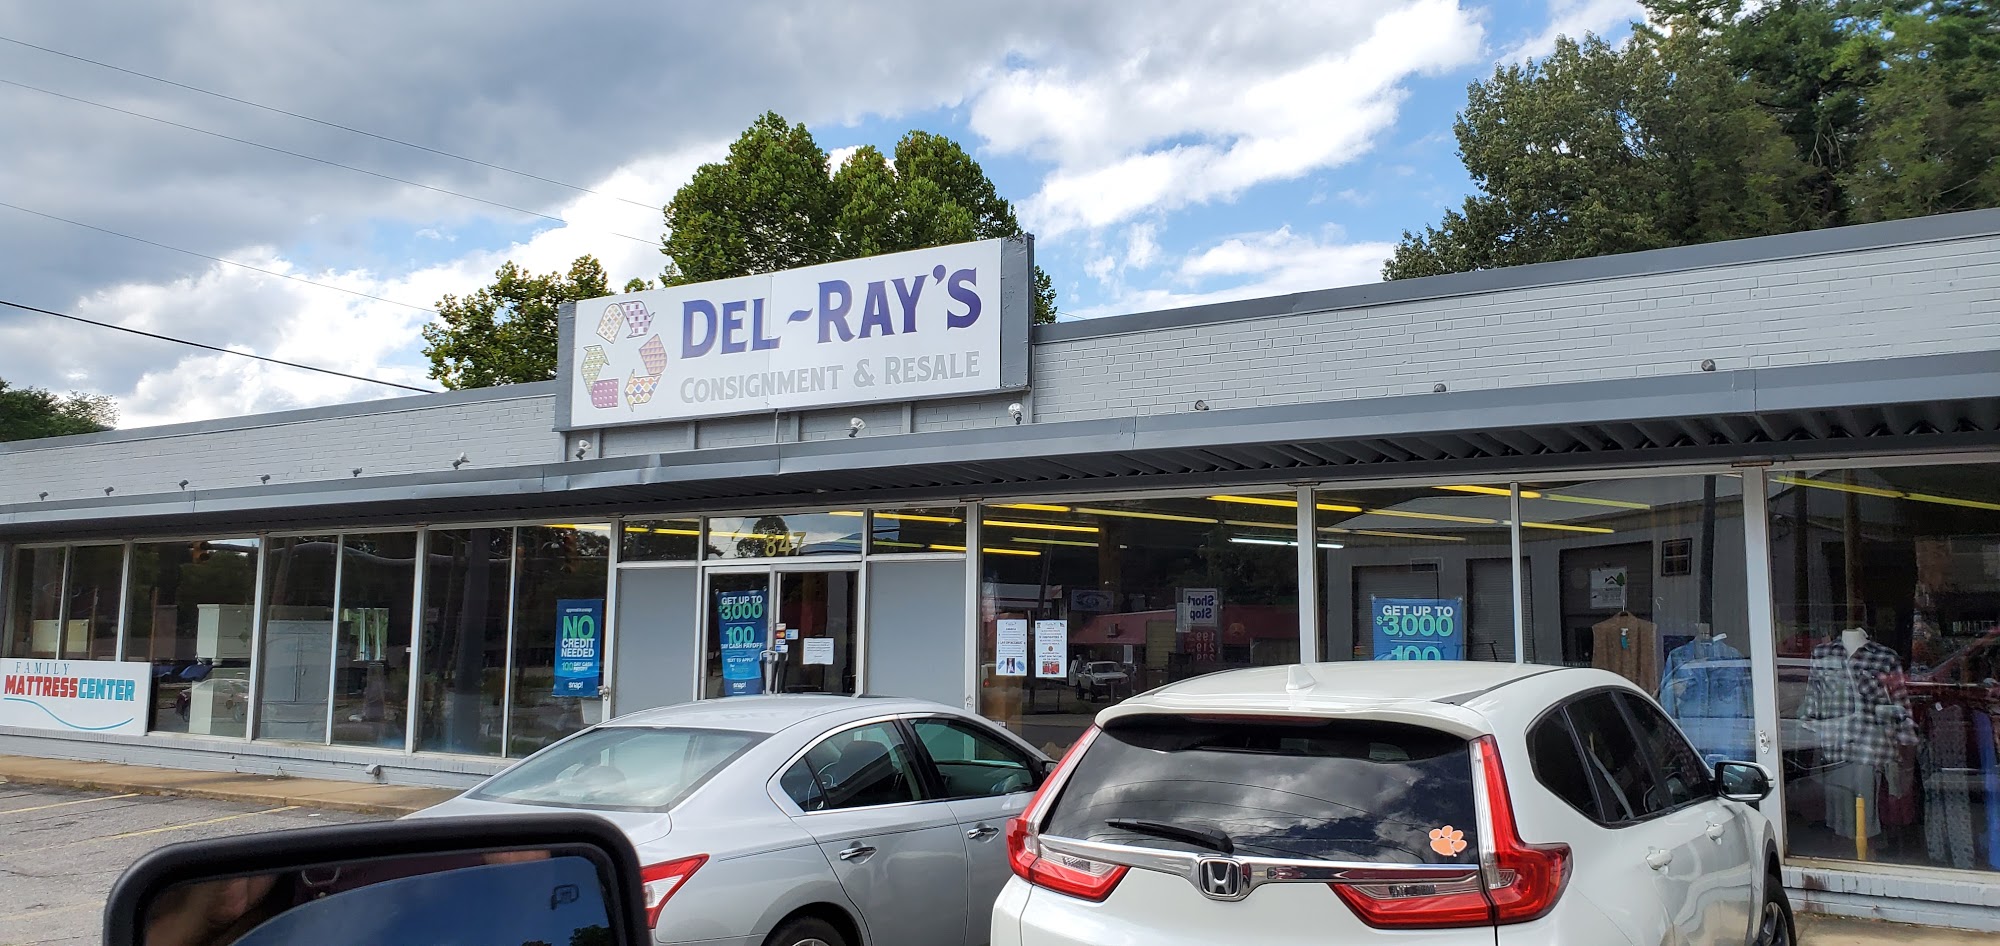 Del-Ray’s